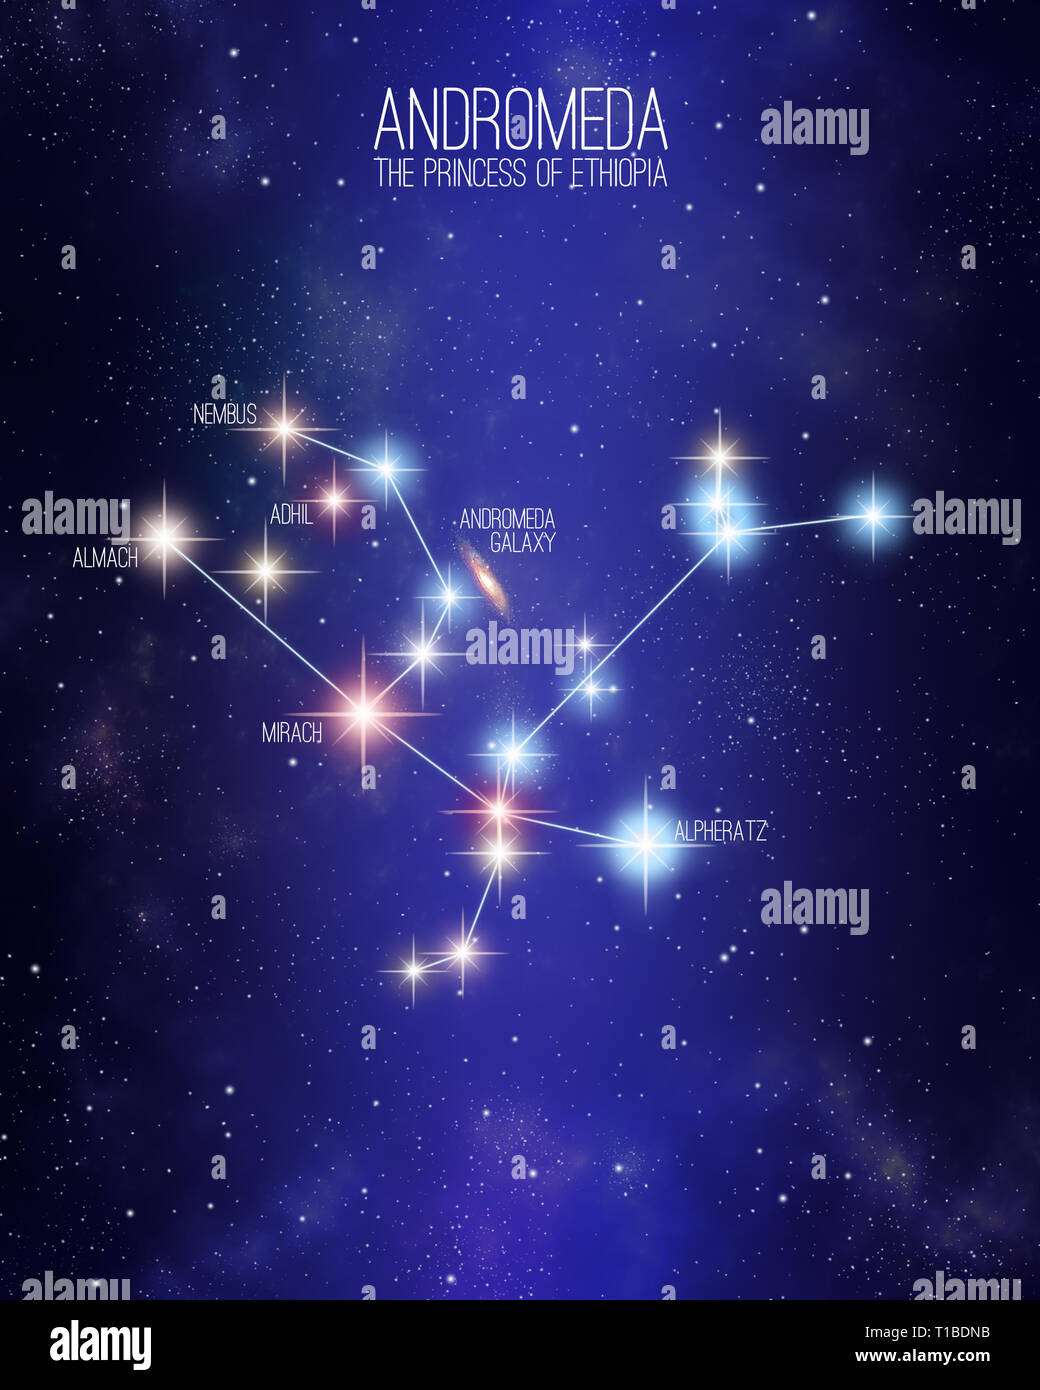 Andromeda die Prinzessin von Äthiopien Konstellation auf einer sternenklaren Raum Hintergrund mit den Namen der wichtigsten Sterne. Relative Größen und verschiedenen Farben sha Stockfoto